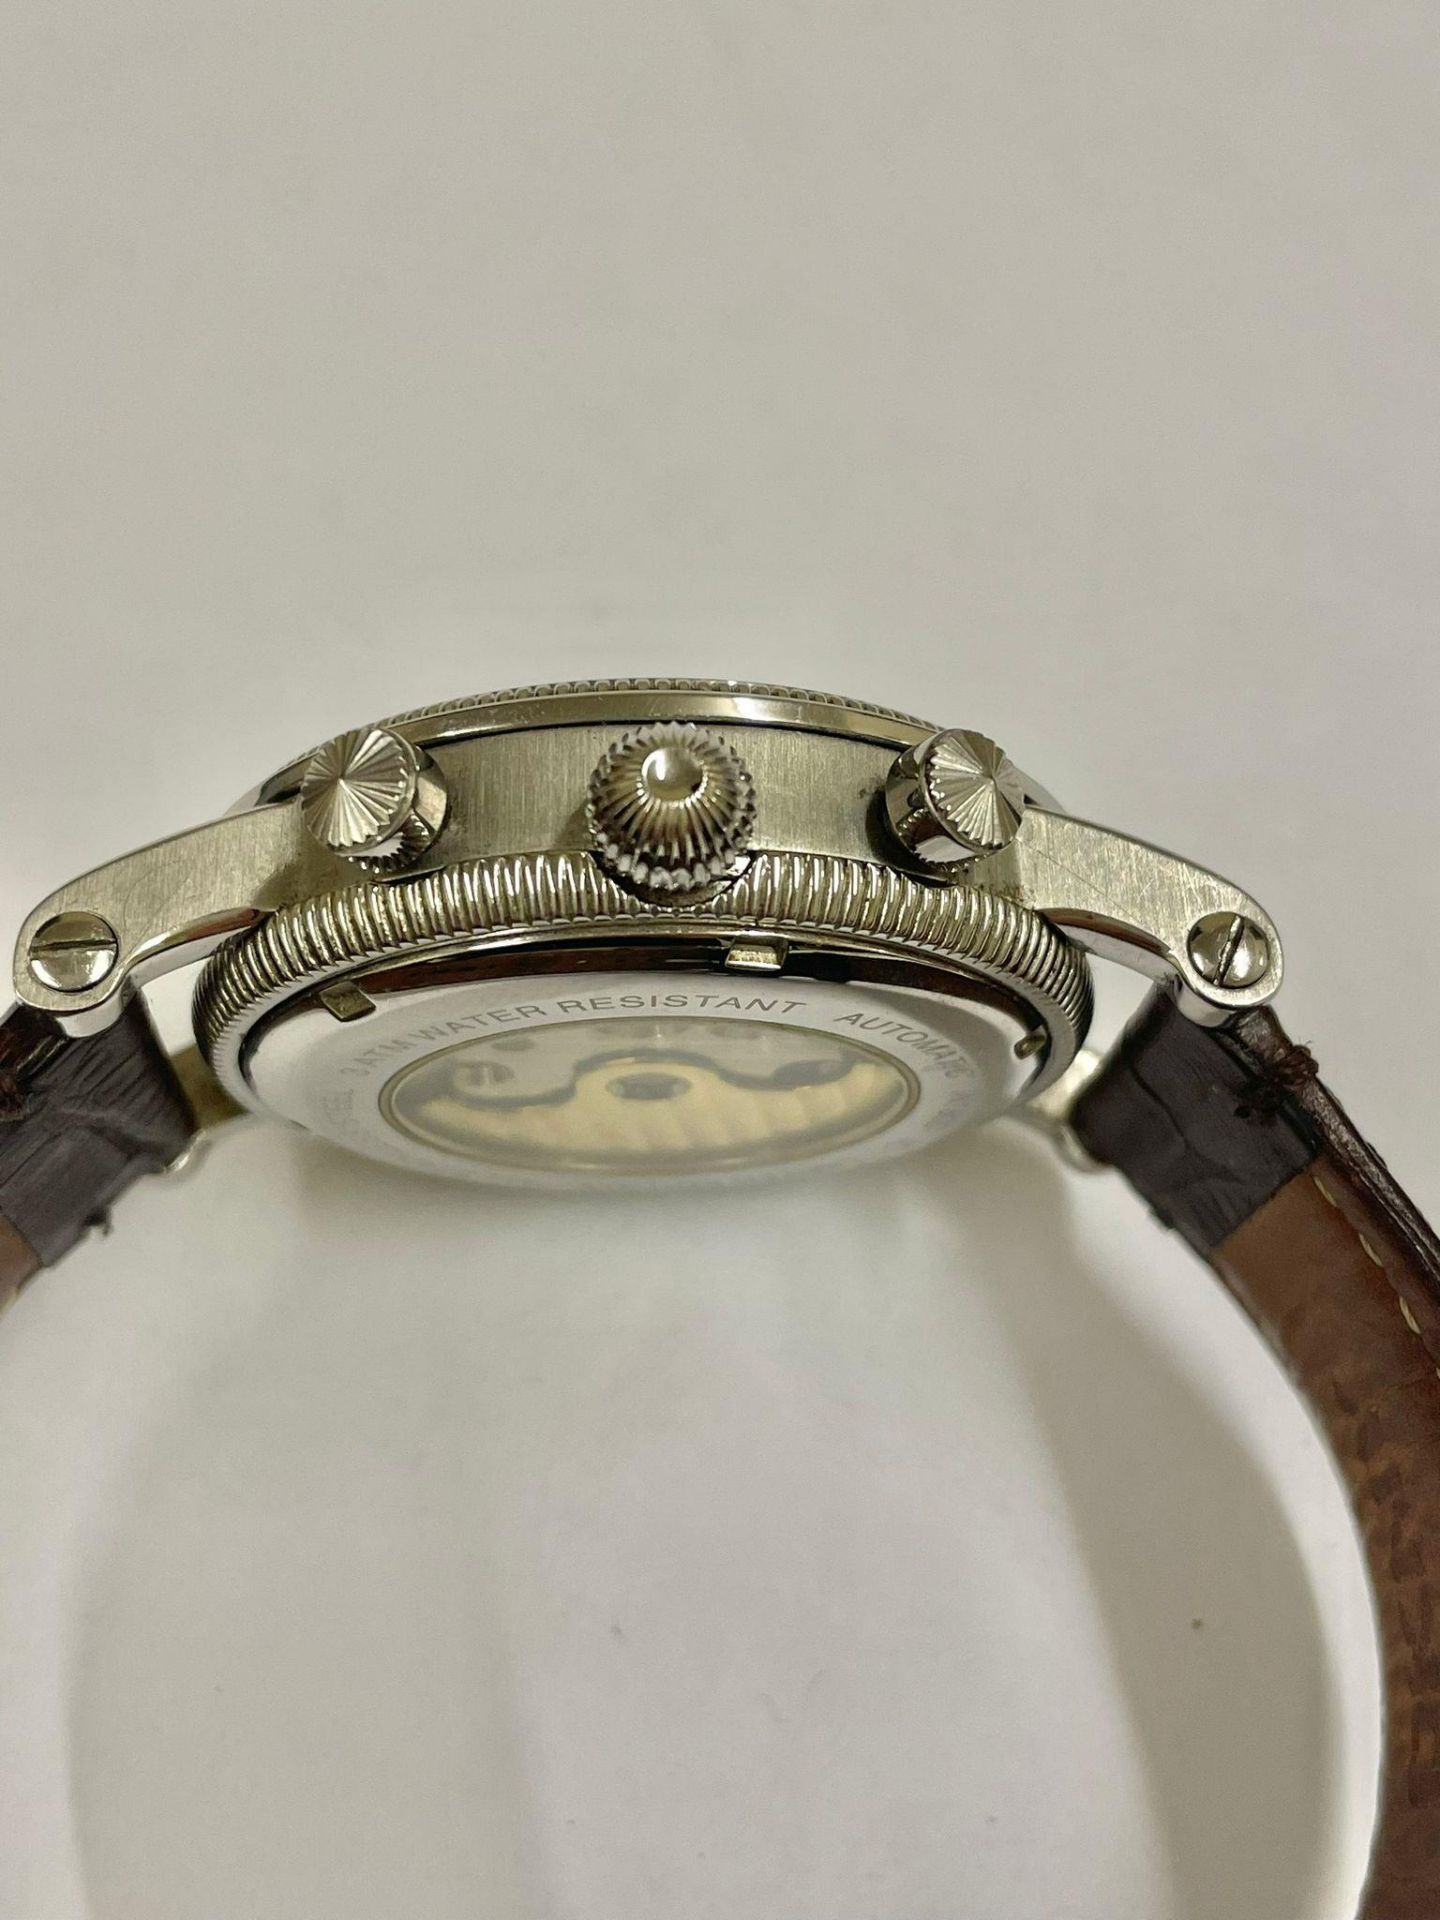 Ingersoll Automatic Calendar watch 42mm case . Working - Bild 4 aus 5